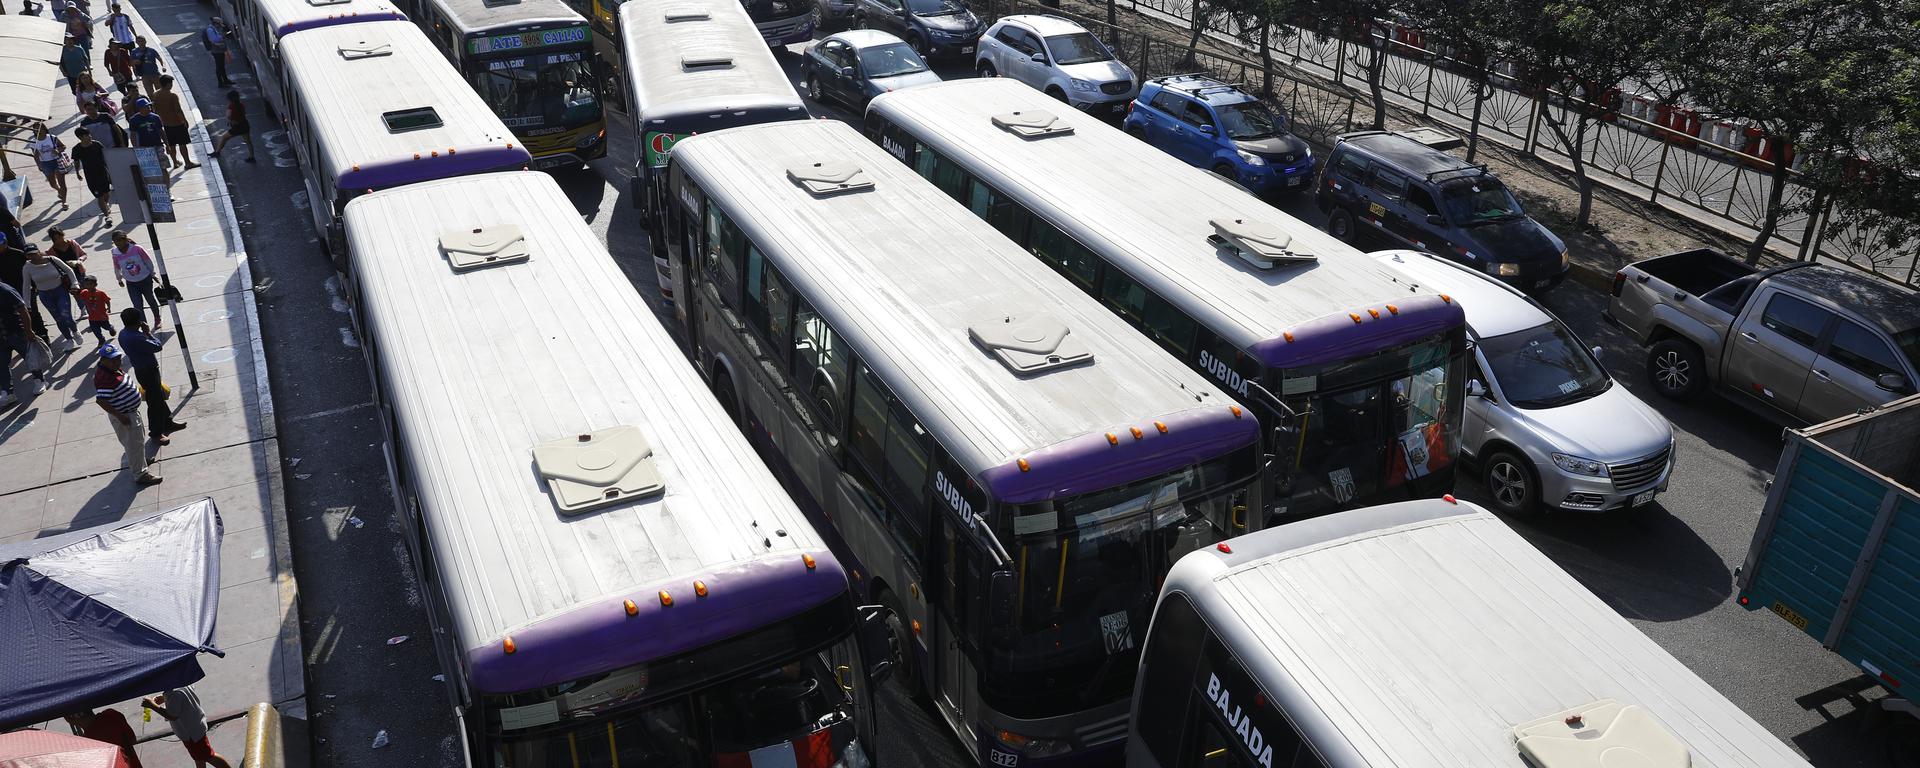 Buses con múltiples papeletas sin pagar reemplazan al corredor morado: crónica del regreso de la informalidad a las calles